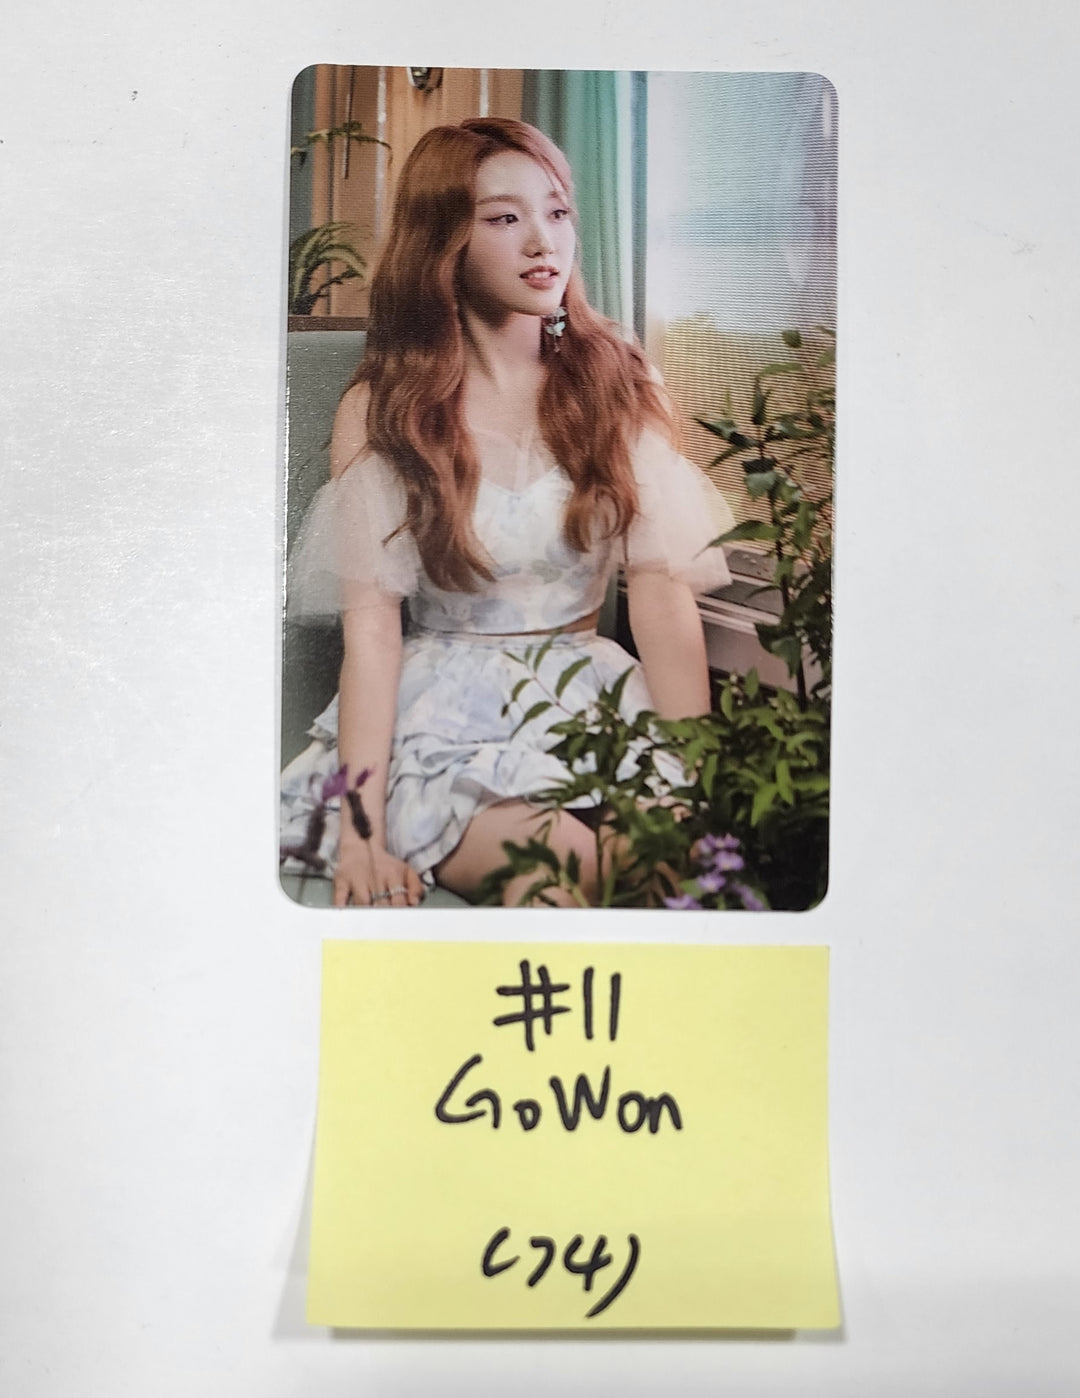 이달의 소녀 "Flip That" 여름 스페셜 미니앨범 - 공식 AR 포토카드